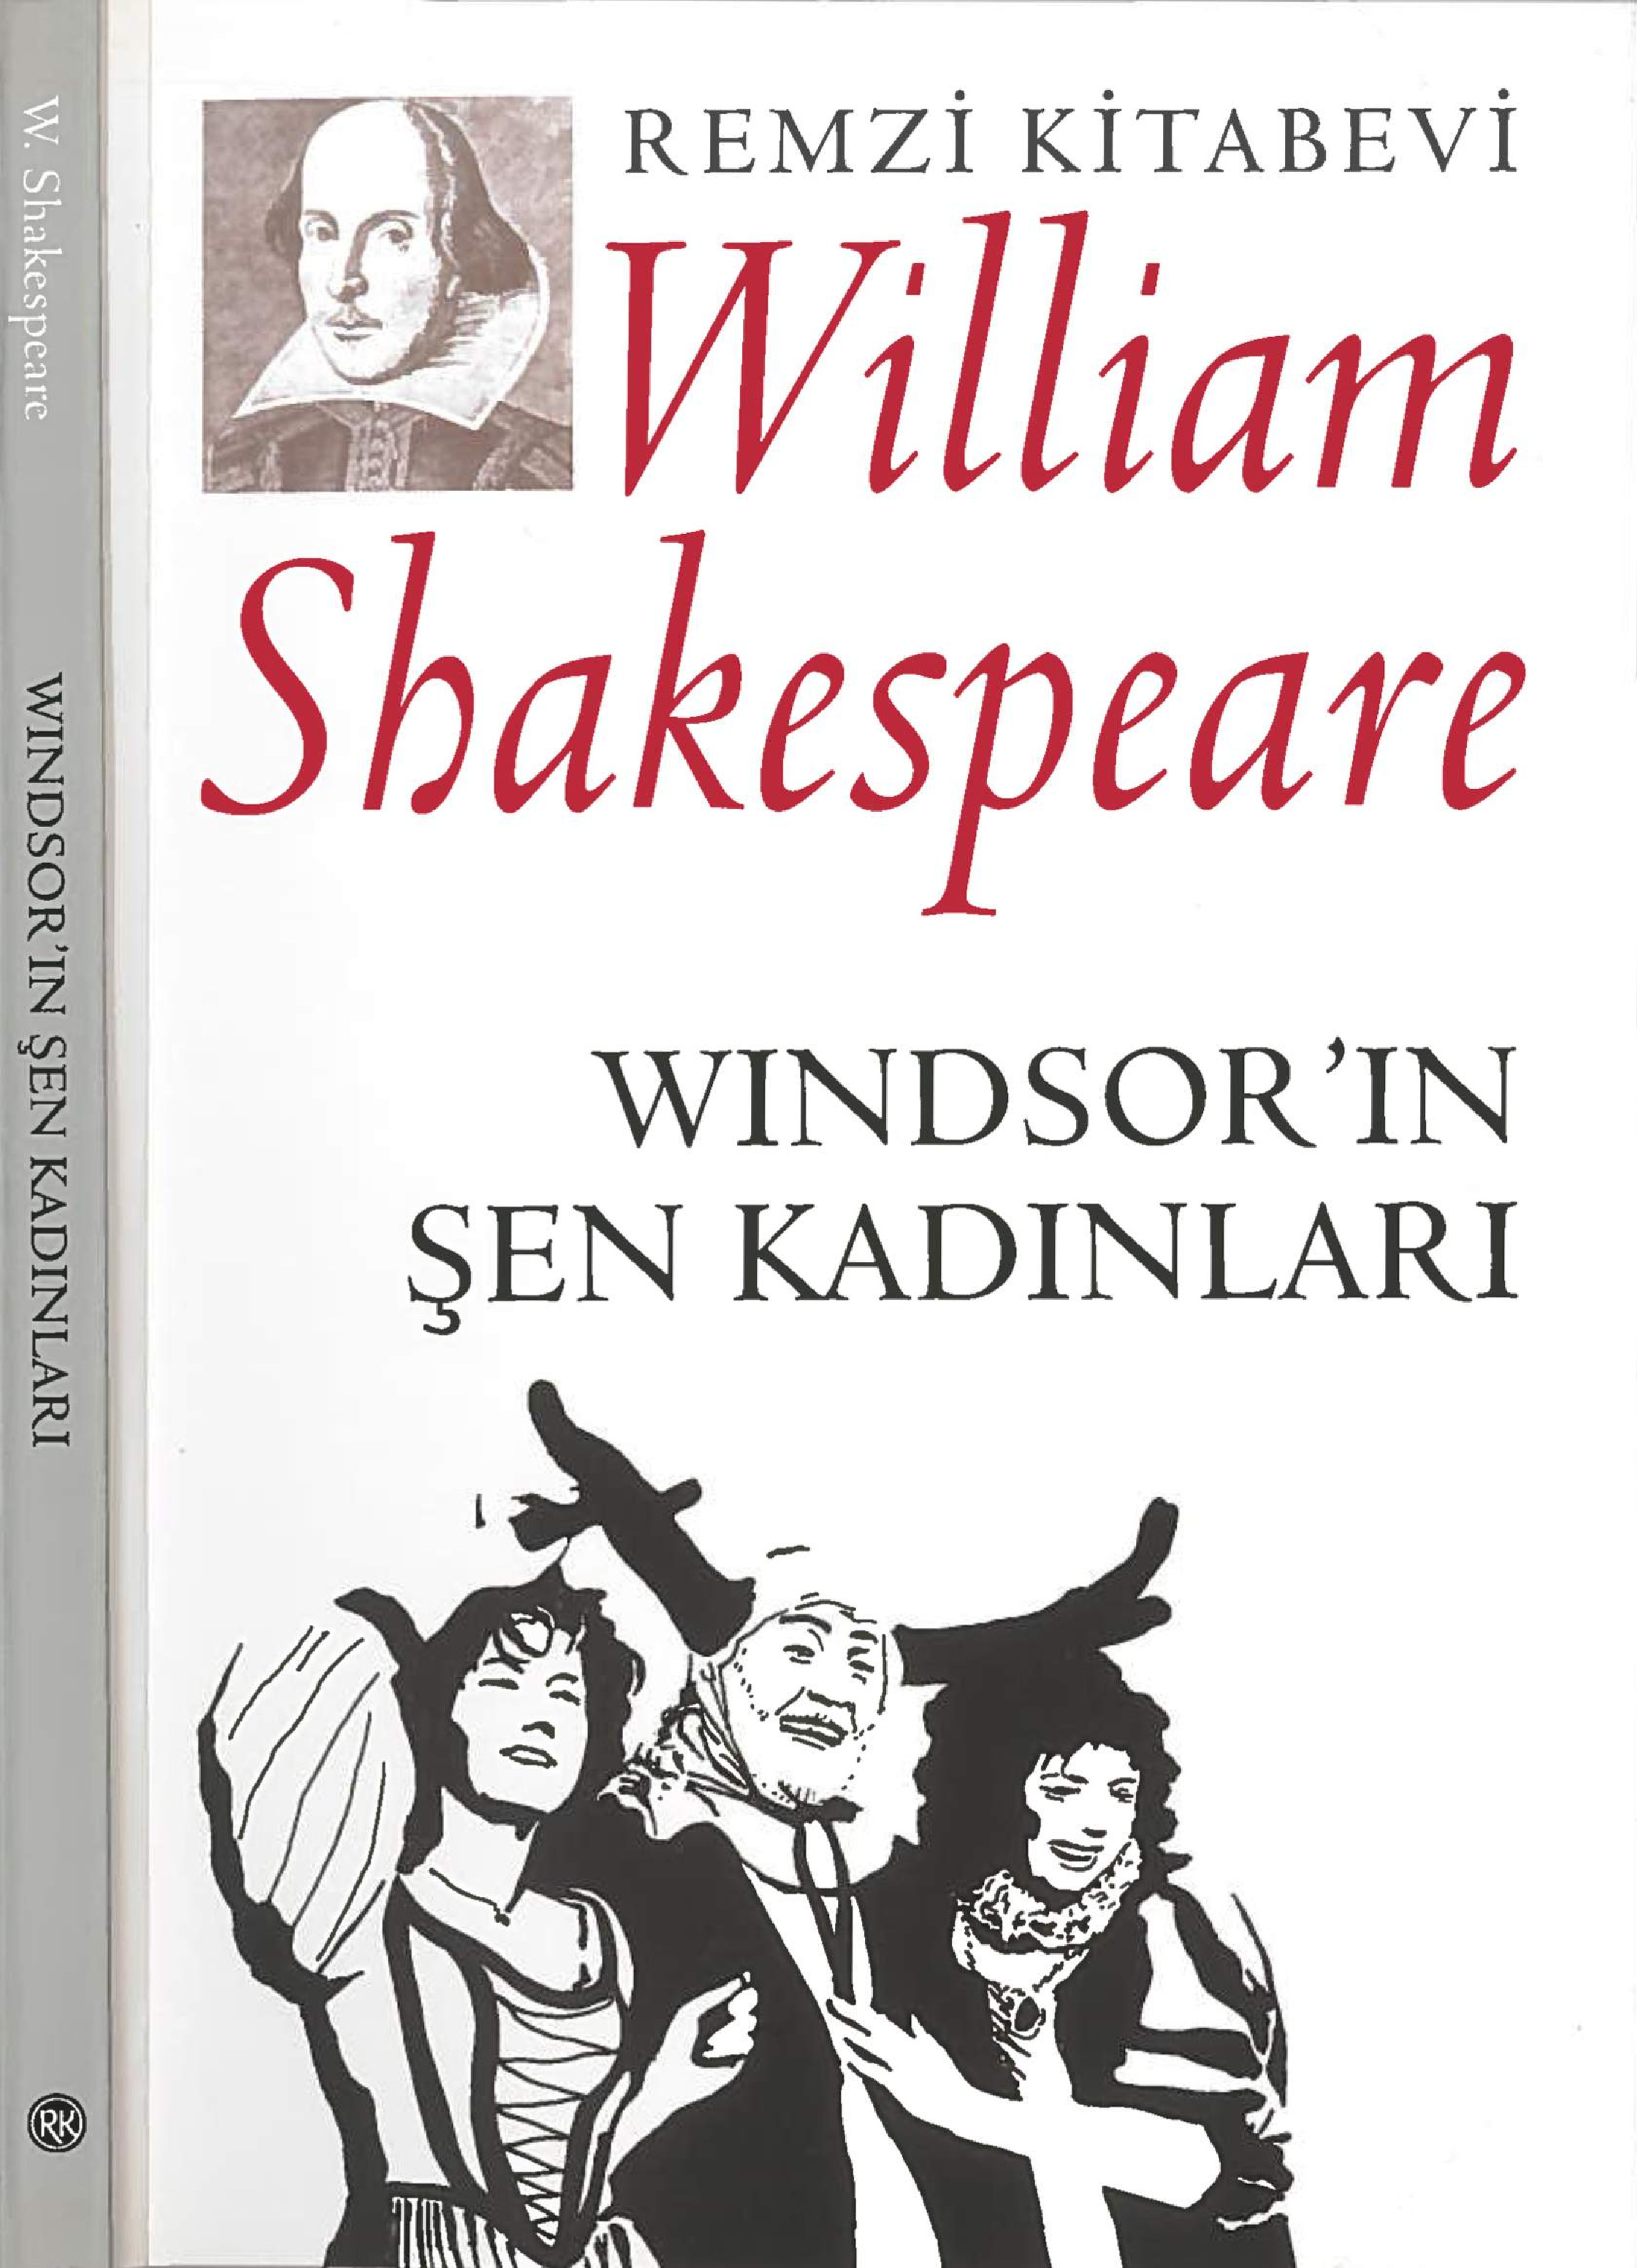 Winsdorin Şen Qadınları William Shakespeare-Bülend Bozqurd-1994-158s